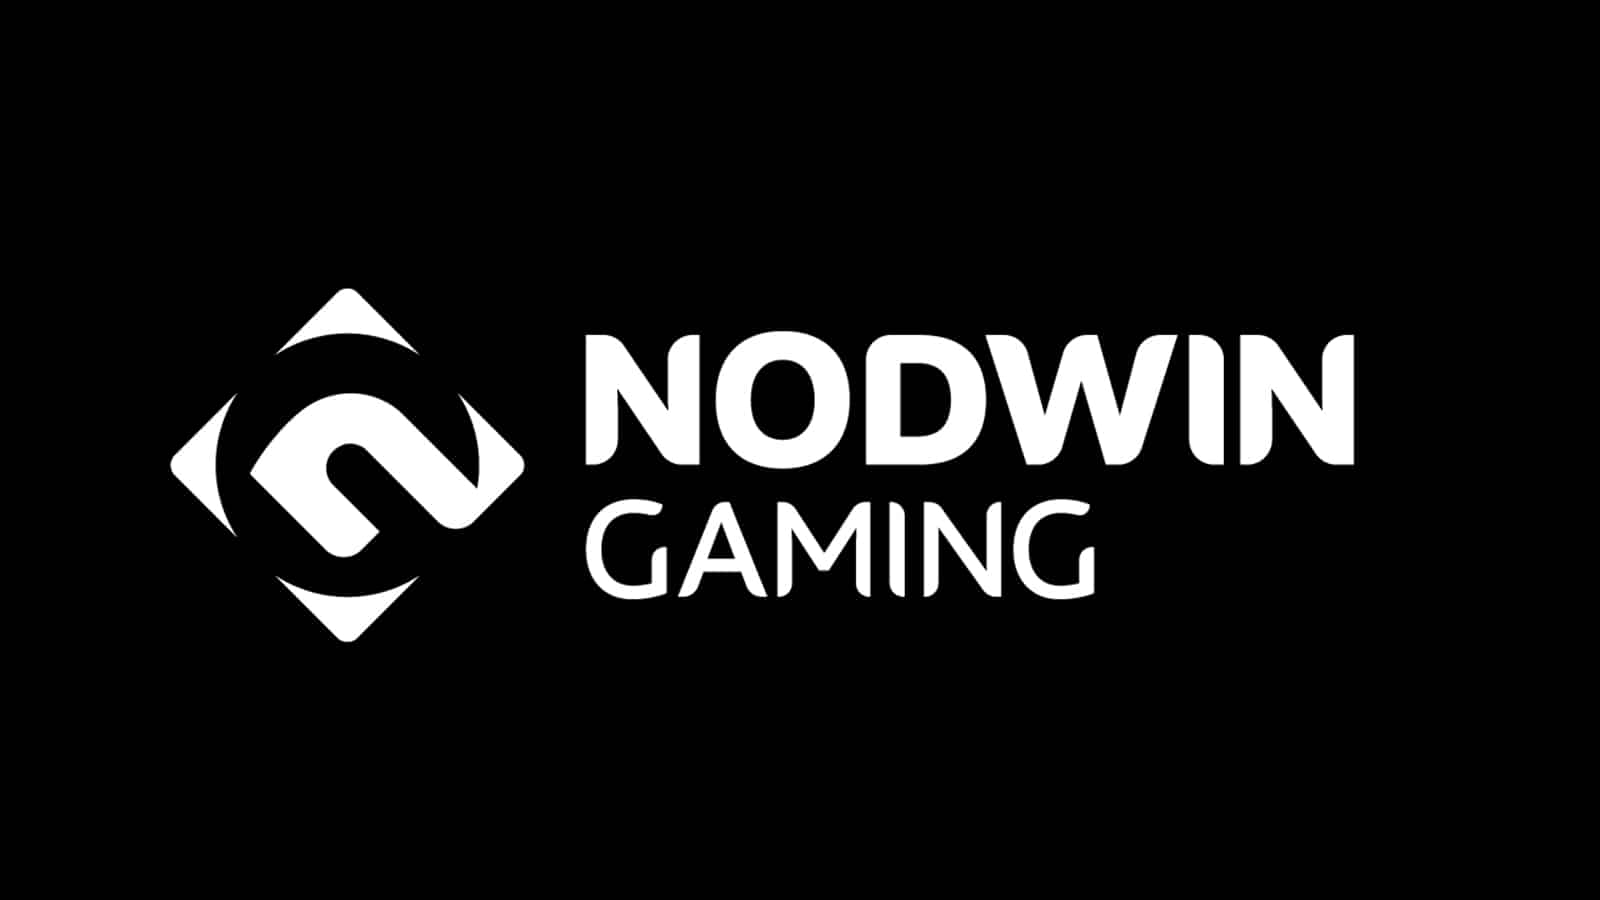 NODWIN Gaming